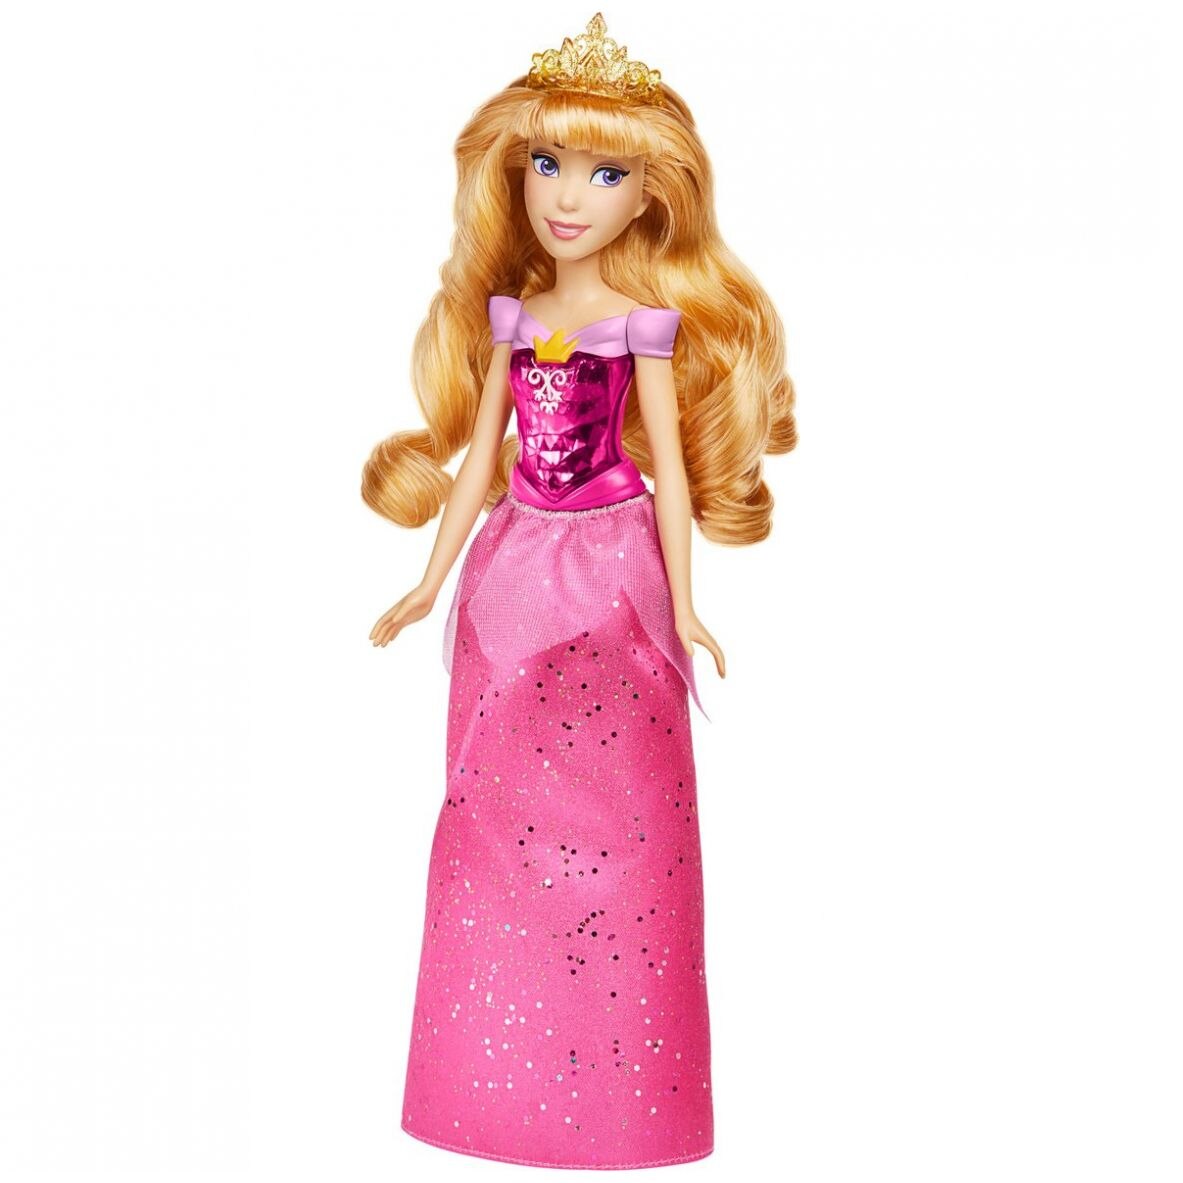 Nuevo Oficial 10" Princesas De Disney Suave Felpa Juguetes Ariel Cenicienta Aurora Belle 